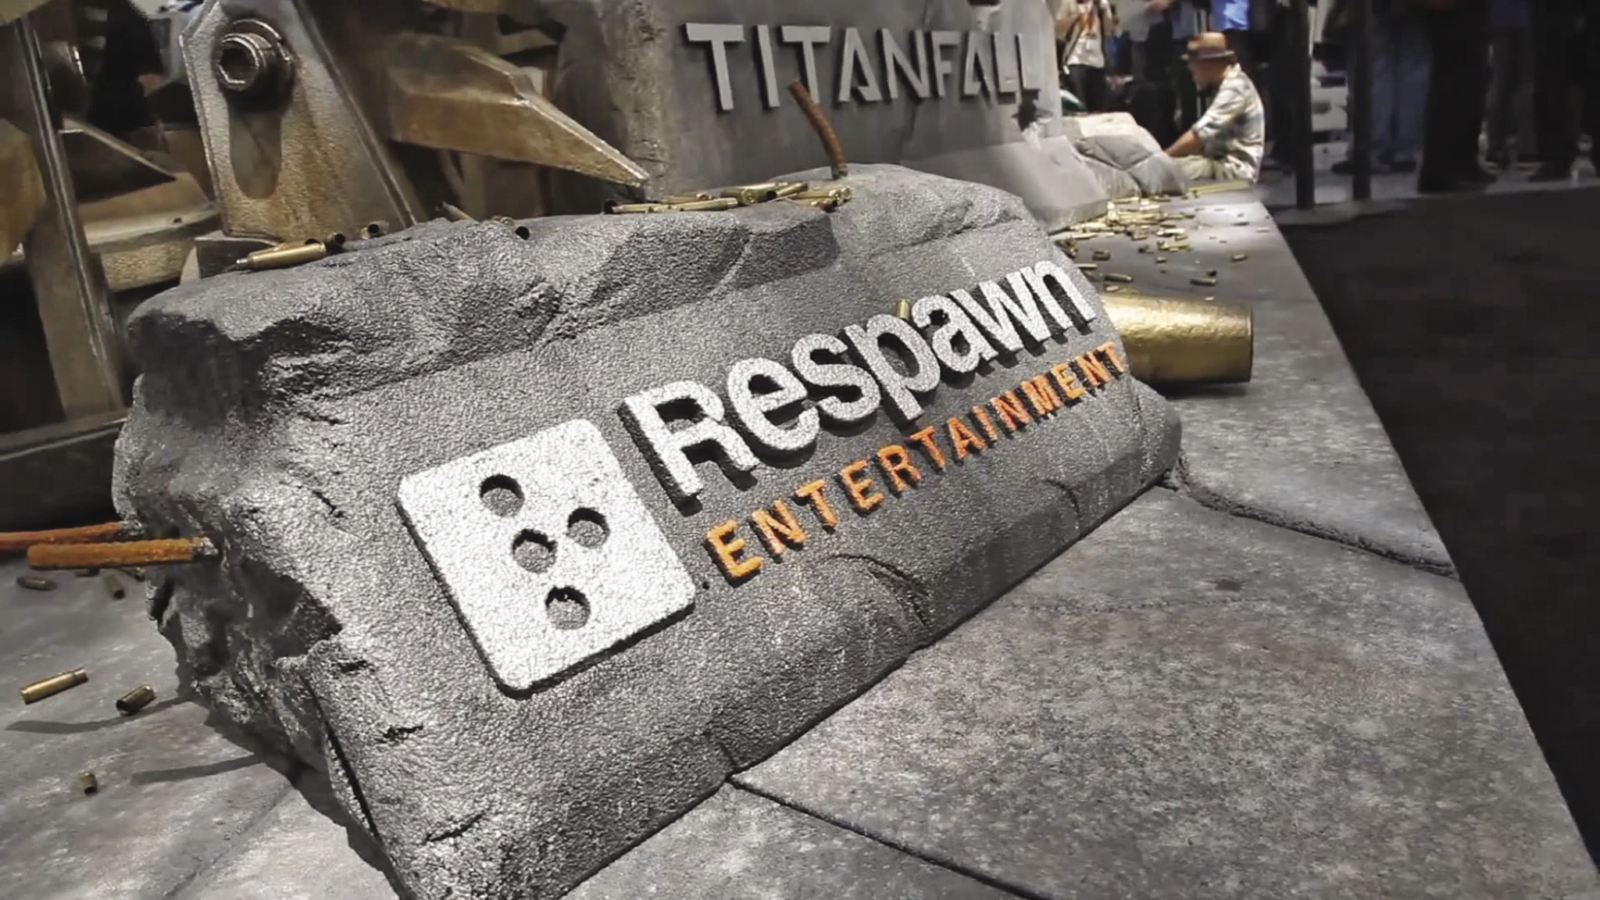 Respawn starebbe lavorando ad un nuovo FPS, ma non a Titanfall 3